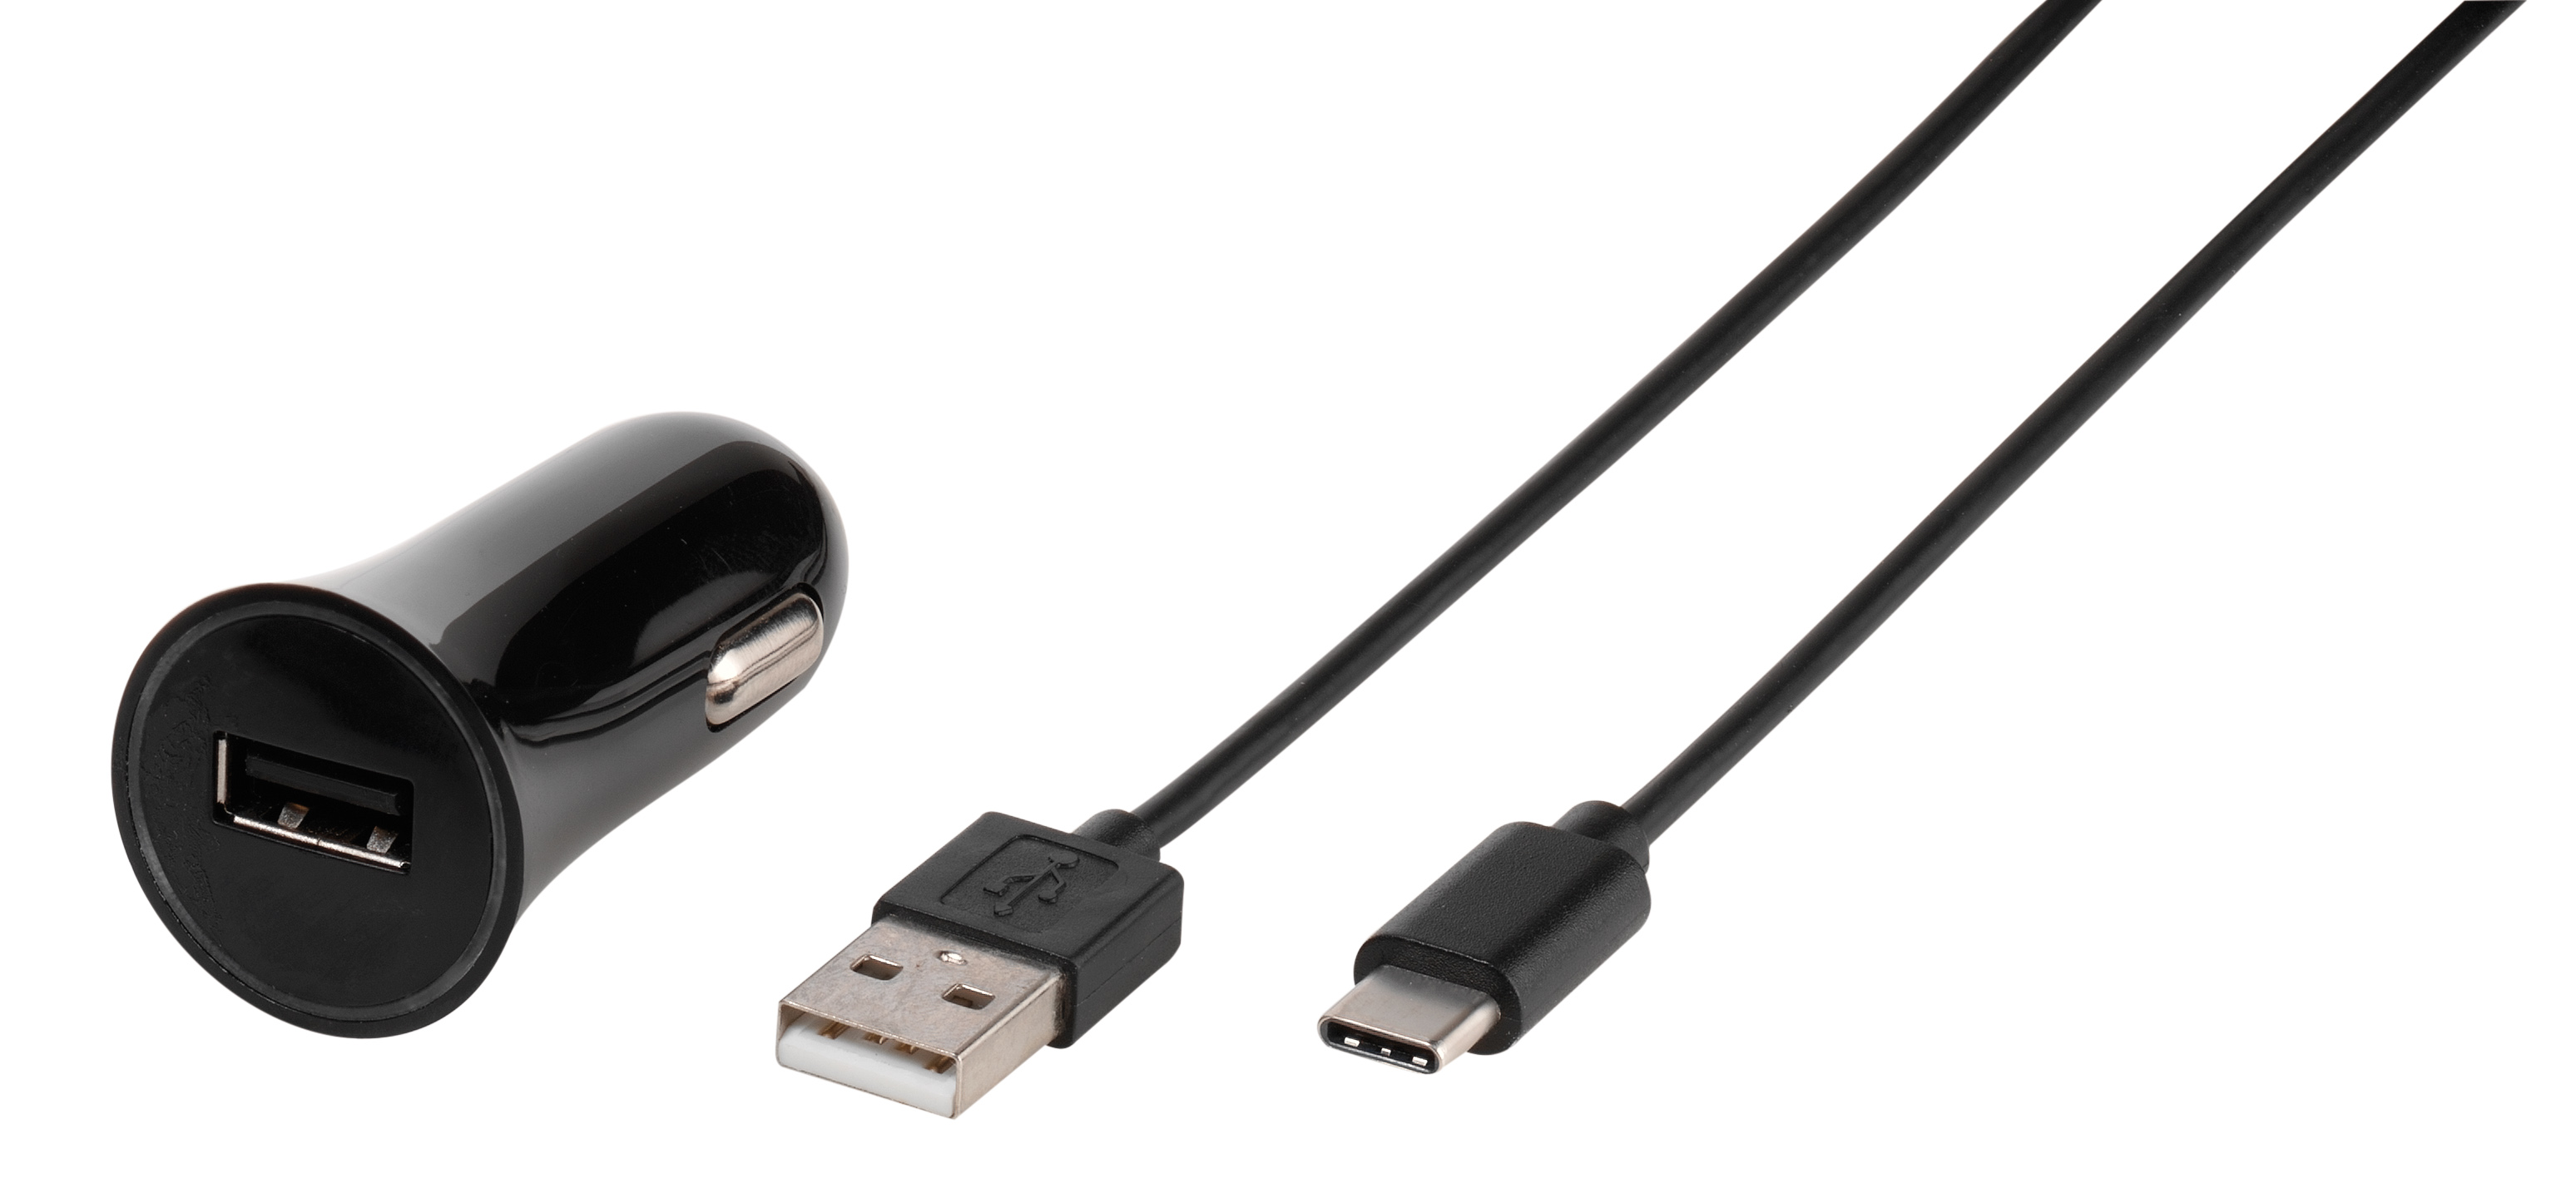 KFZ Prio 4.8 Ladegerät mit USB und USB-C Anschlüsse und Schnellladetechnik  – Schwarz - German